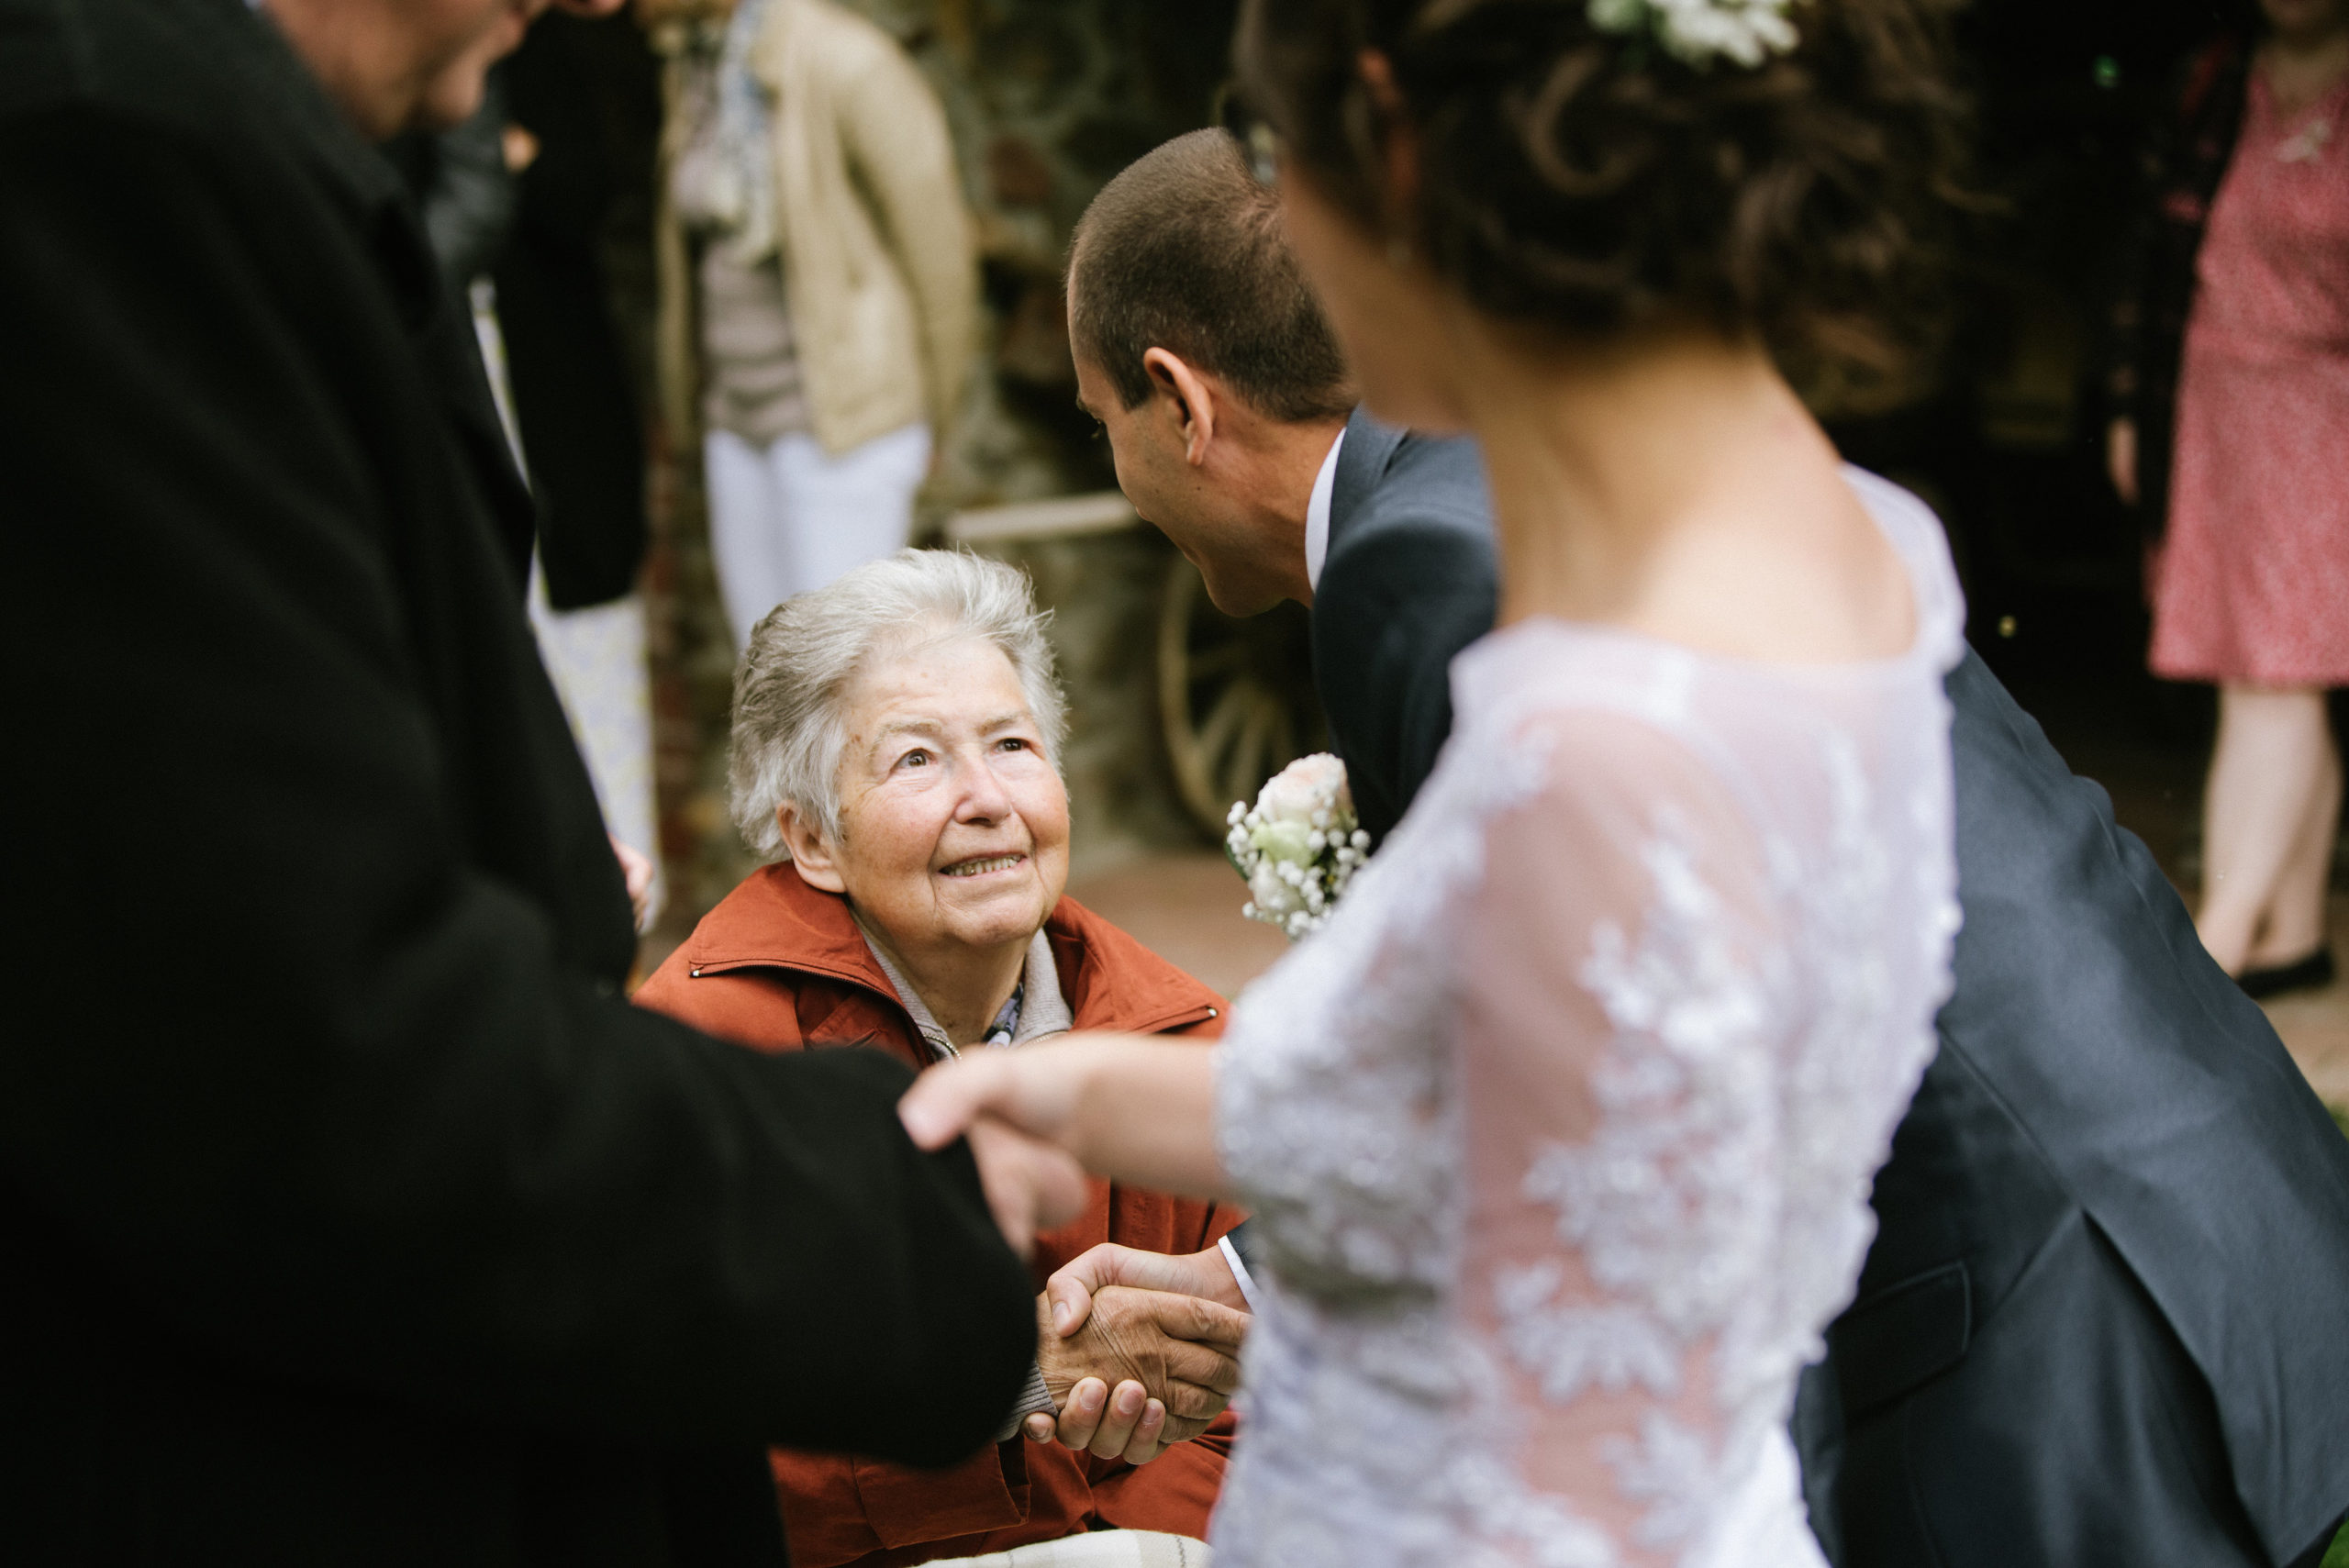 Svatba – důležité poznatky